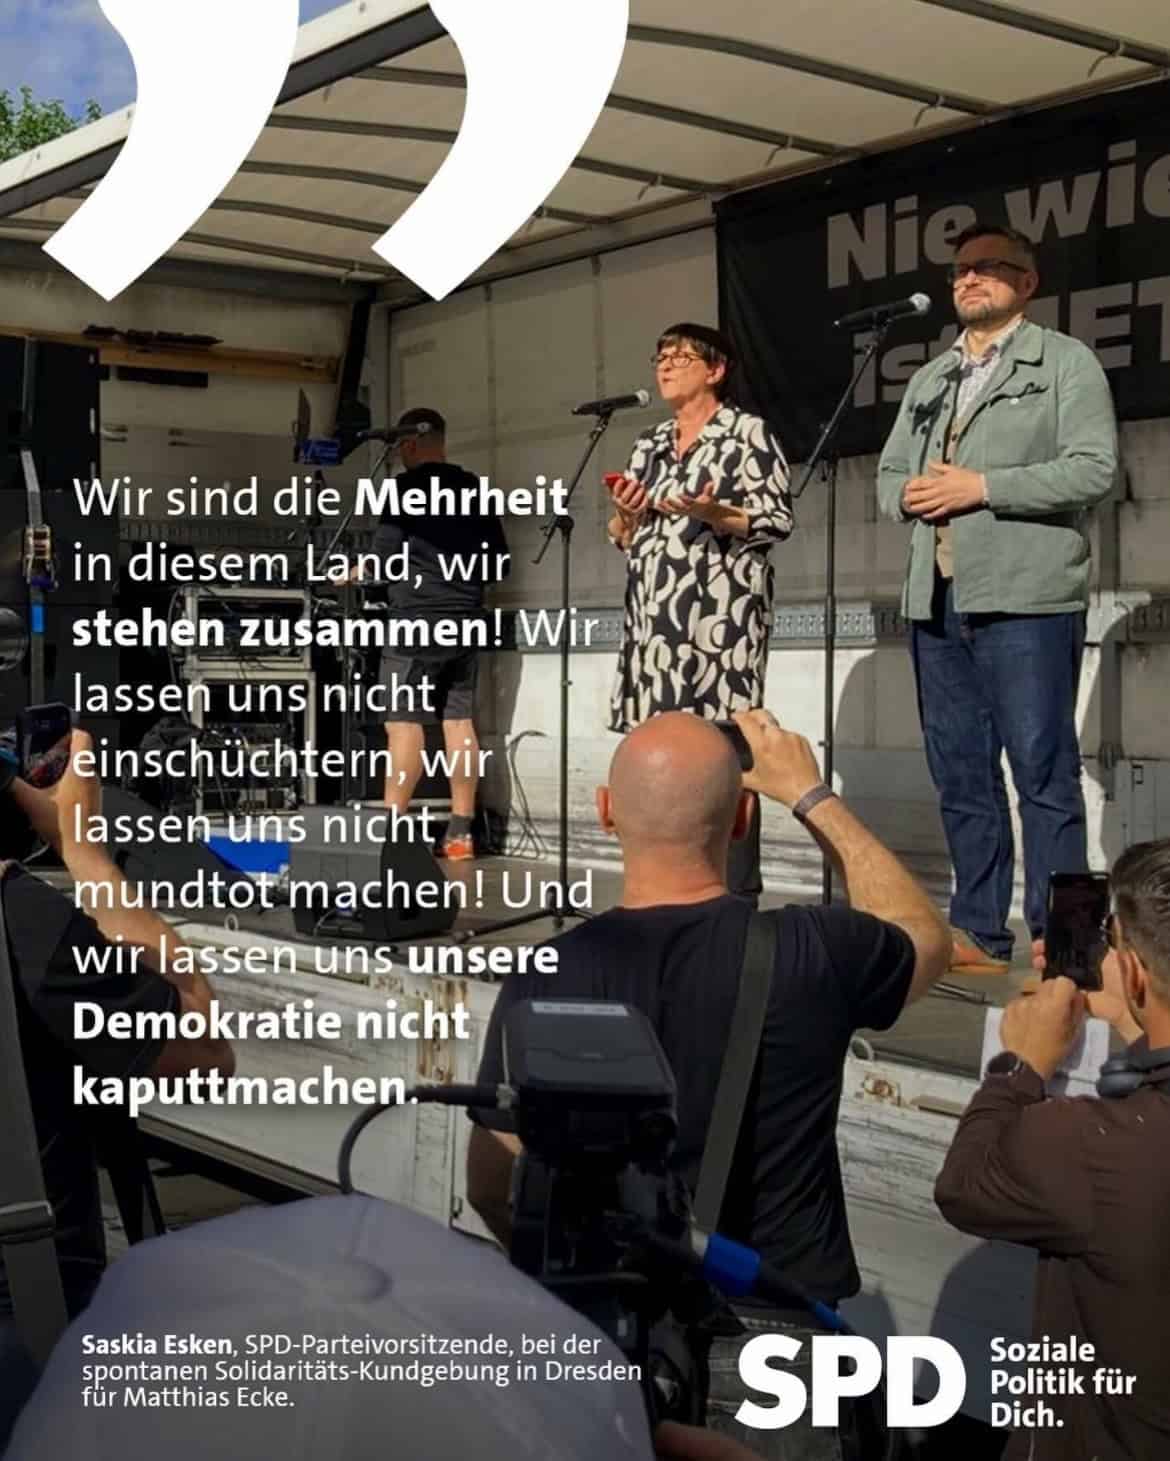 Saskia Esken, SPD-Parteivorsitzende, bei der spontanen Solidaritäts-Kundgebung in Dresden für Matthias Ecke: Wir sind die Mehrheit in diesem Land, wir stehen zusammen! Wir lassen uns nicht einschüchtern, wir lassen uns nicht mundtot machen! Und wir lassen uns unsere Demokratie nicht kaputtmachen.